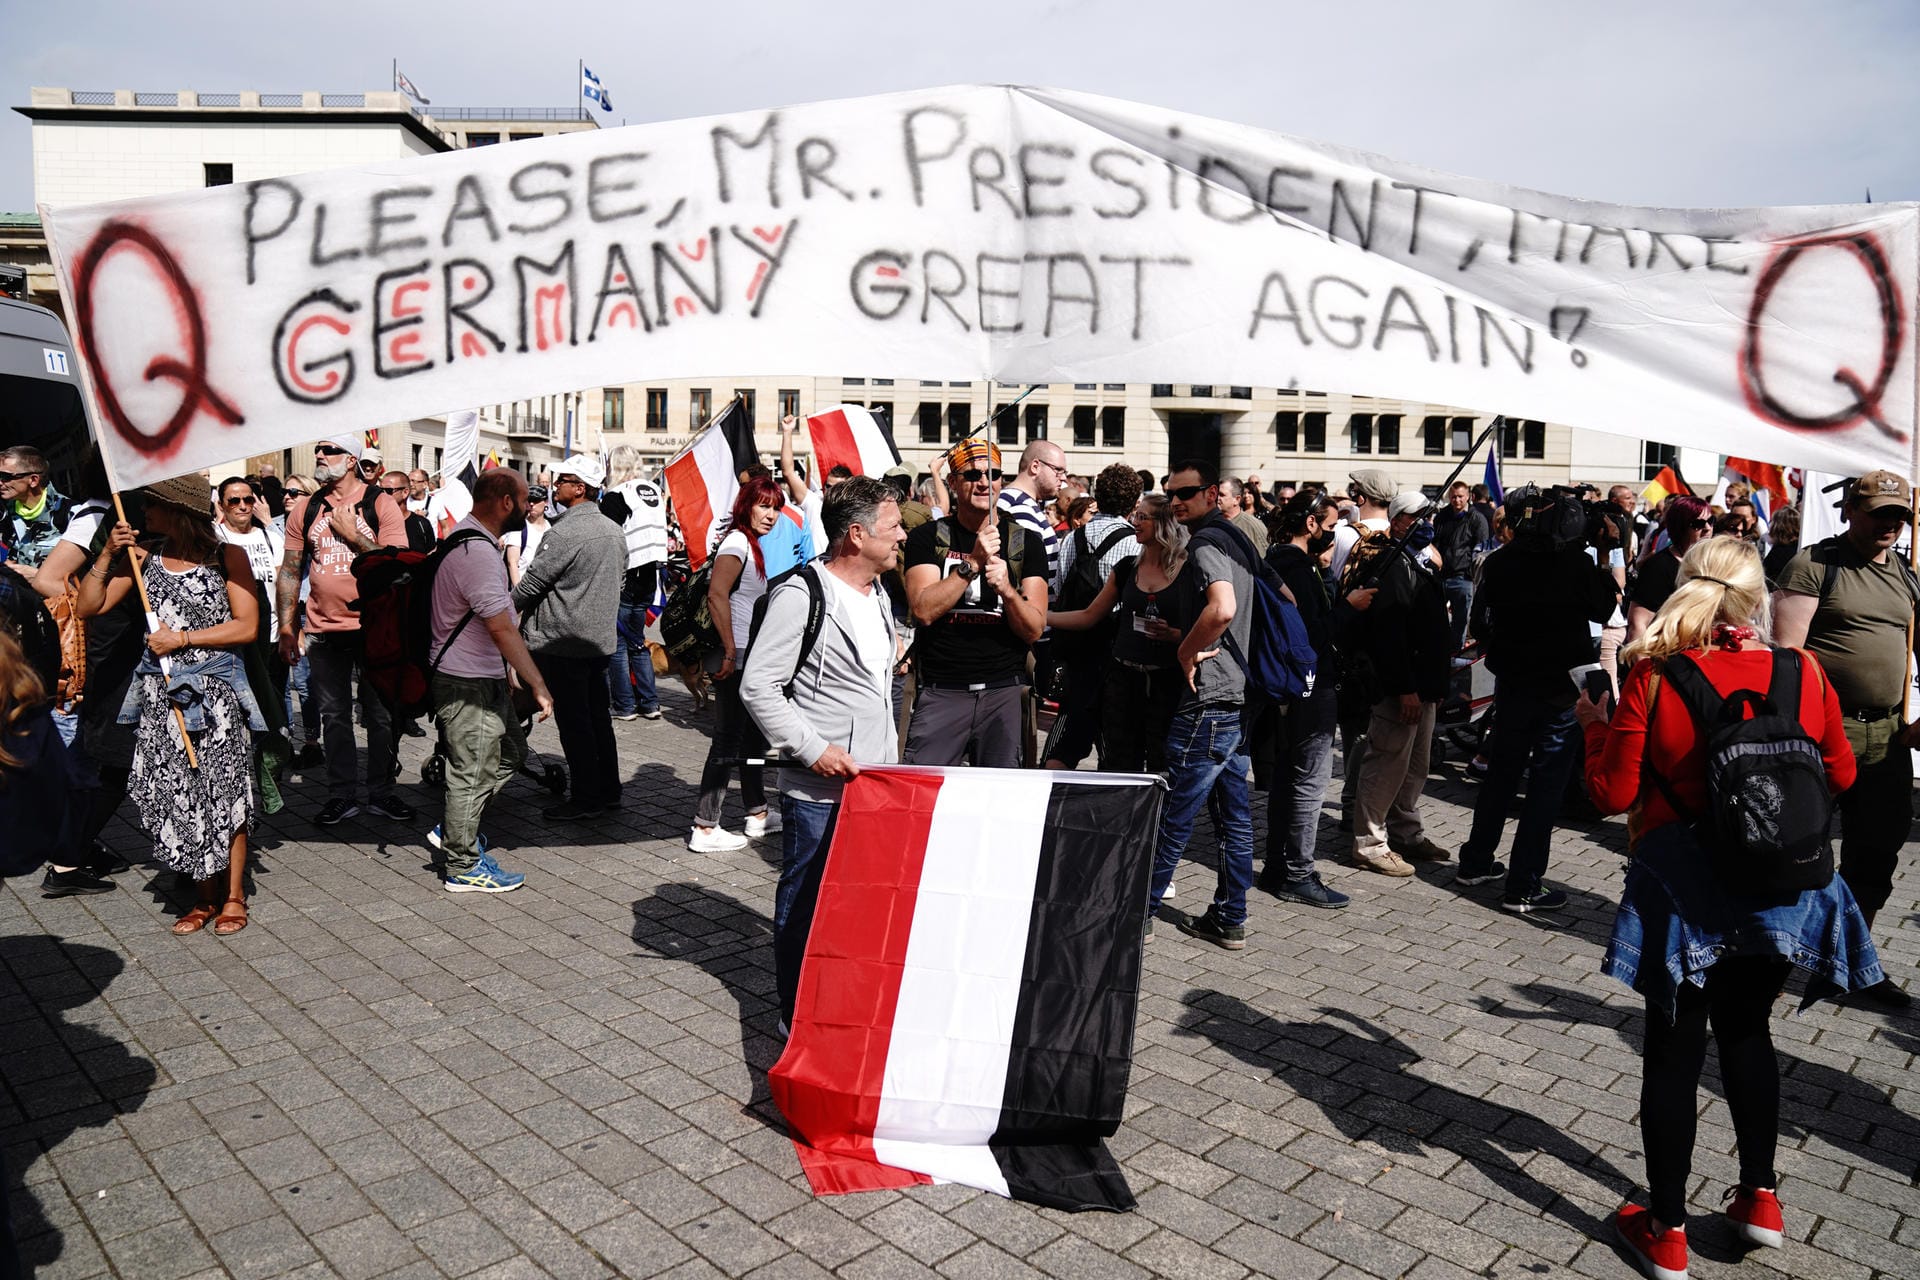 "Please, Mr. President, Make Germany Great Again!" – manche Demonstranten wünschen sich Unterstützung aus den USA. Bereits am Freitag hatten sich Menschen vor den Botschaften der USA und Russlands versammelt und einen Friedensvertrag gefordert.